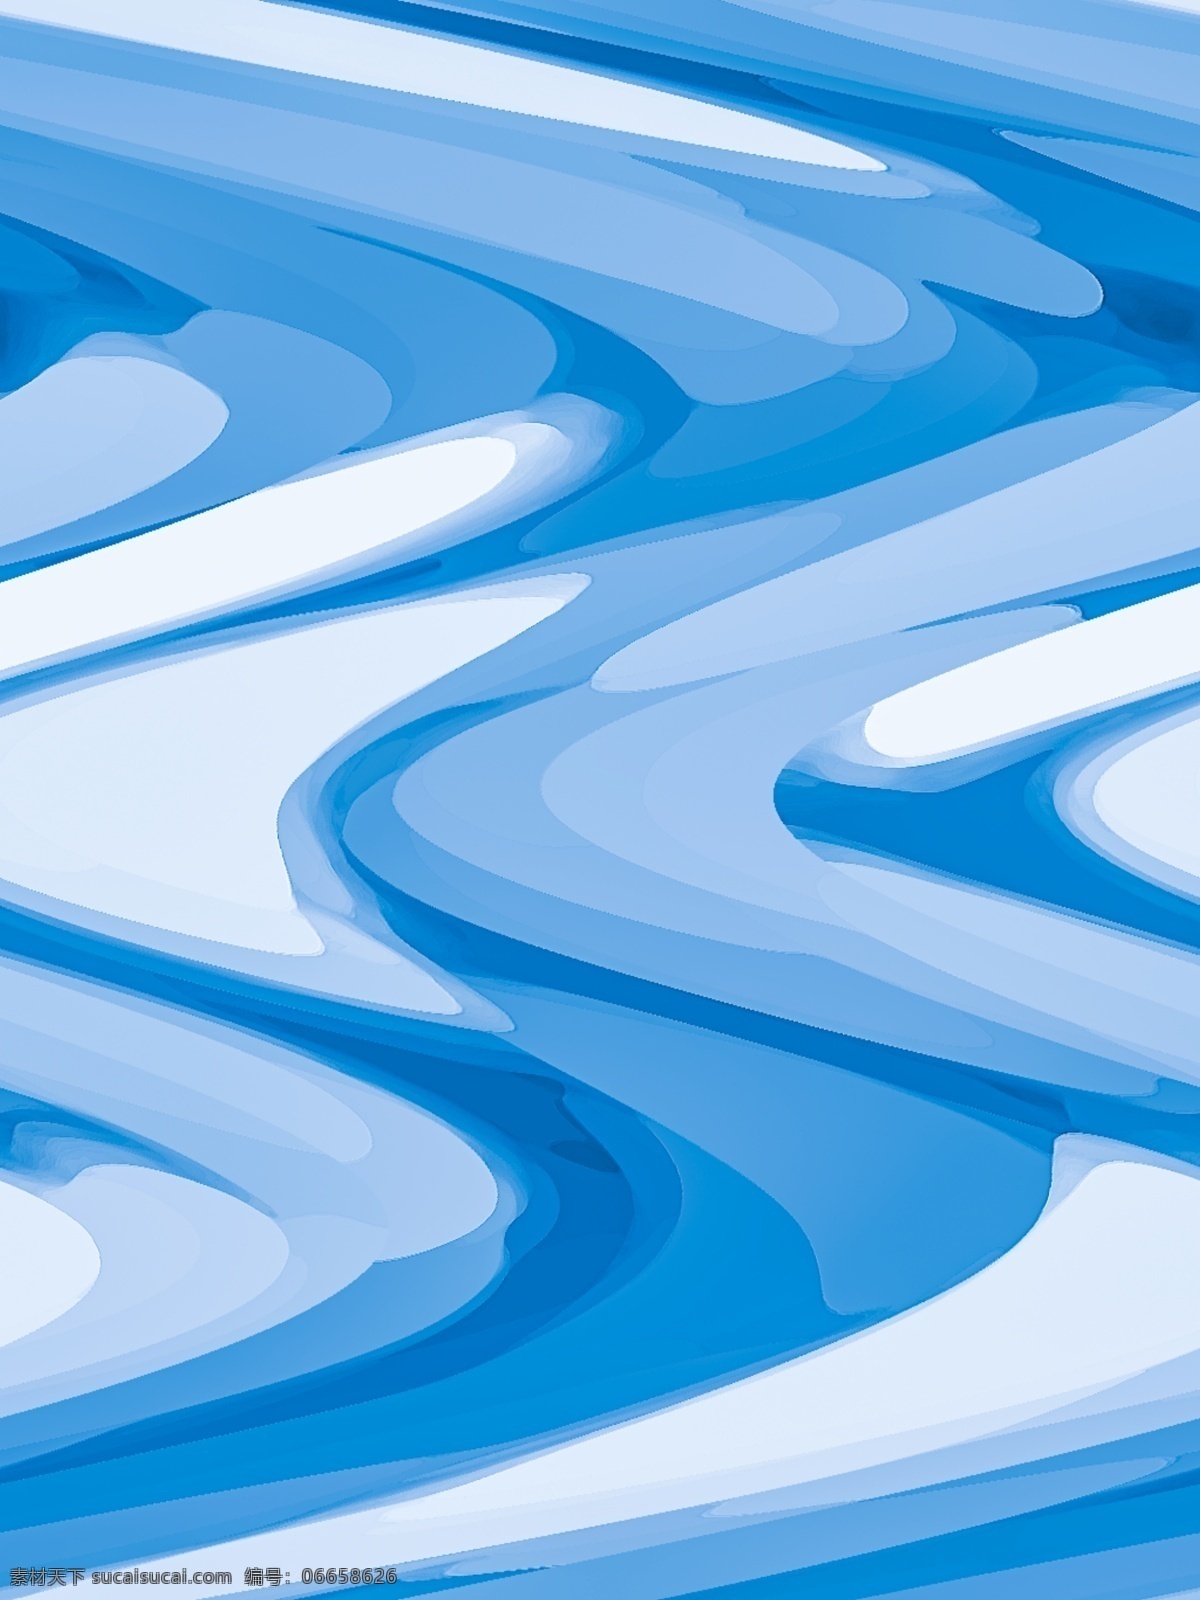 唯美 简约 风流 线型 时尚 蓝色 层叠 冰川 时代 背景 简约风 流线型 时尚蓝色 多彩层叠 冰川时代 清新 干净 蓝白搭配